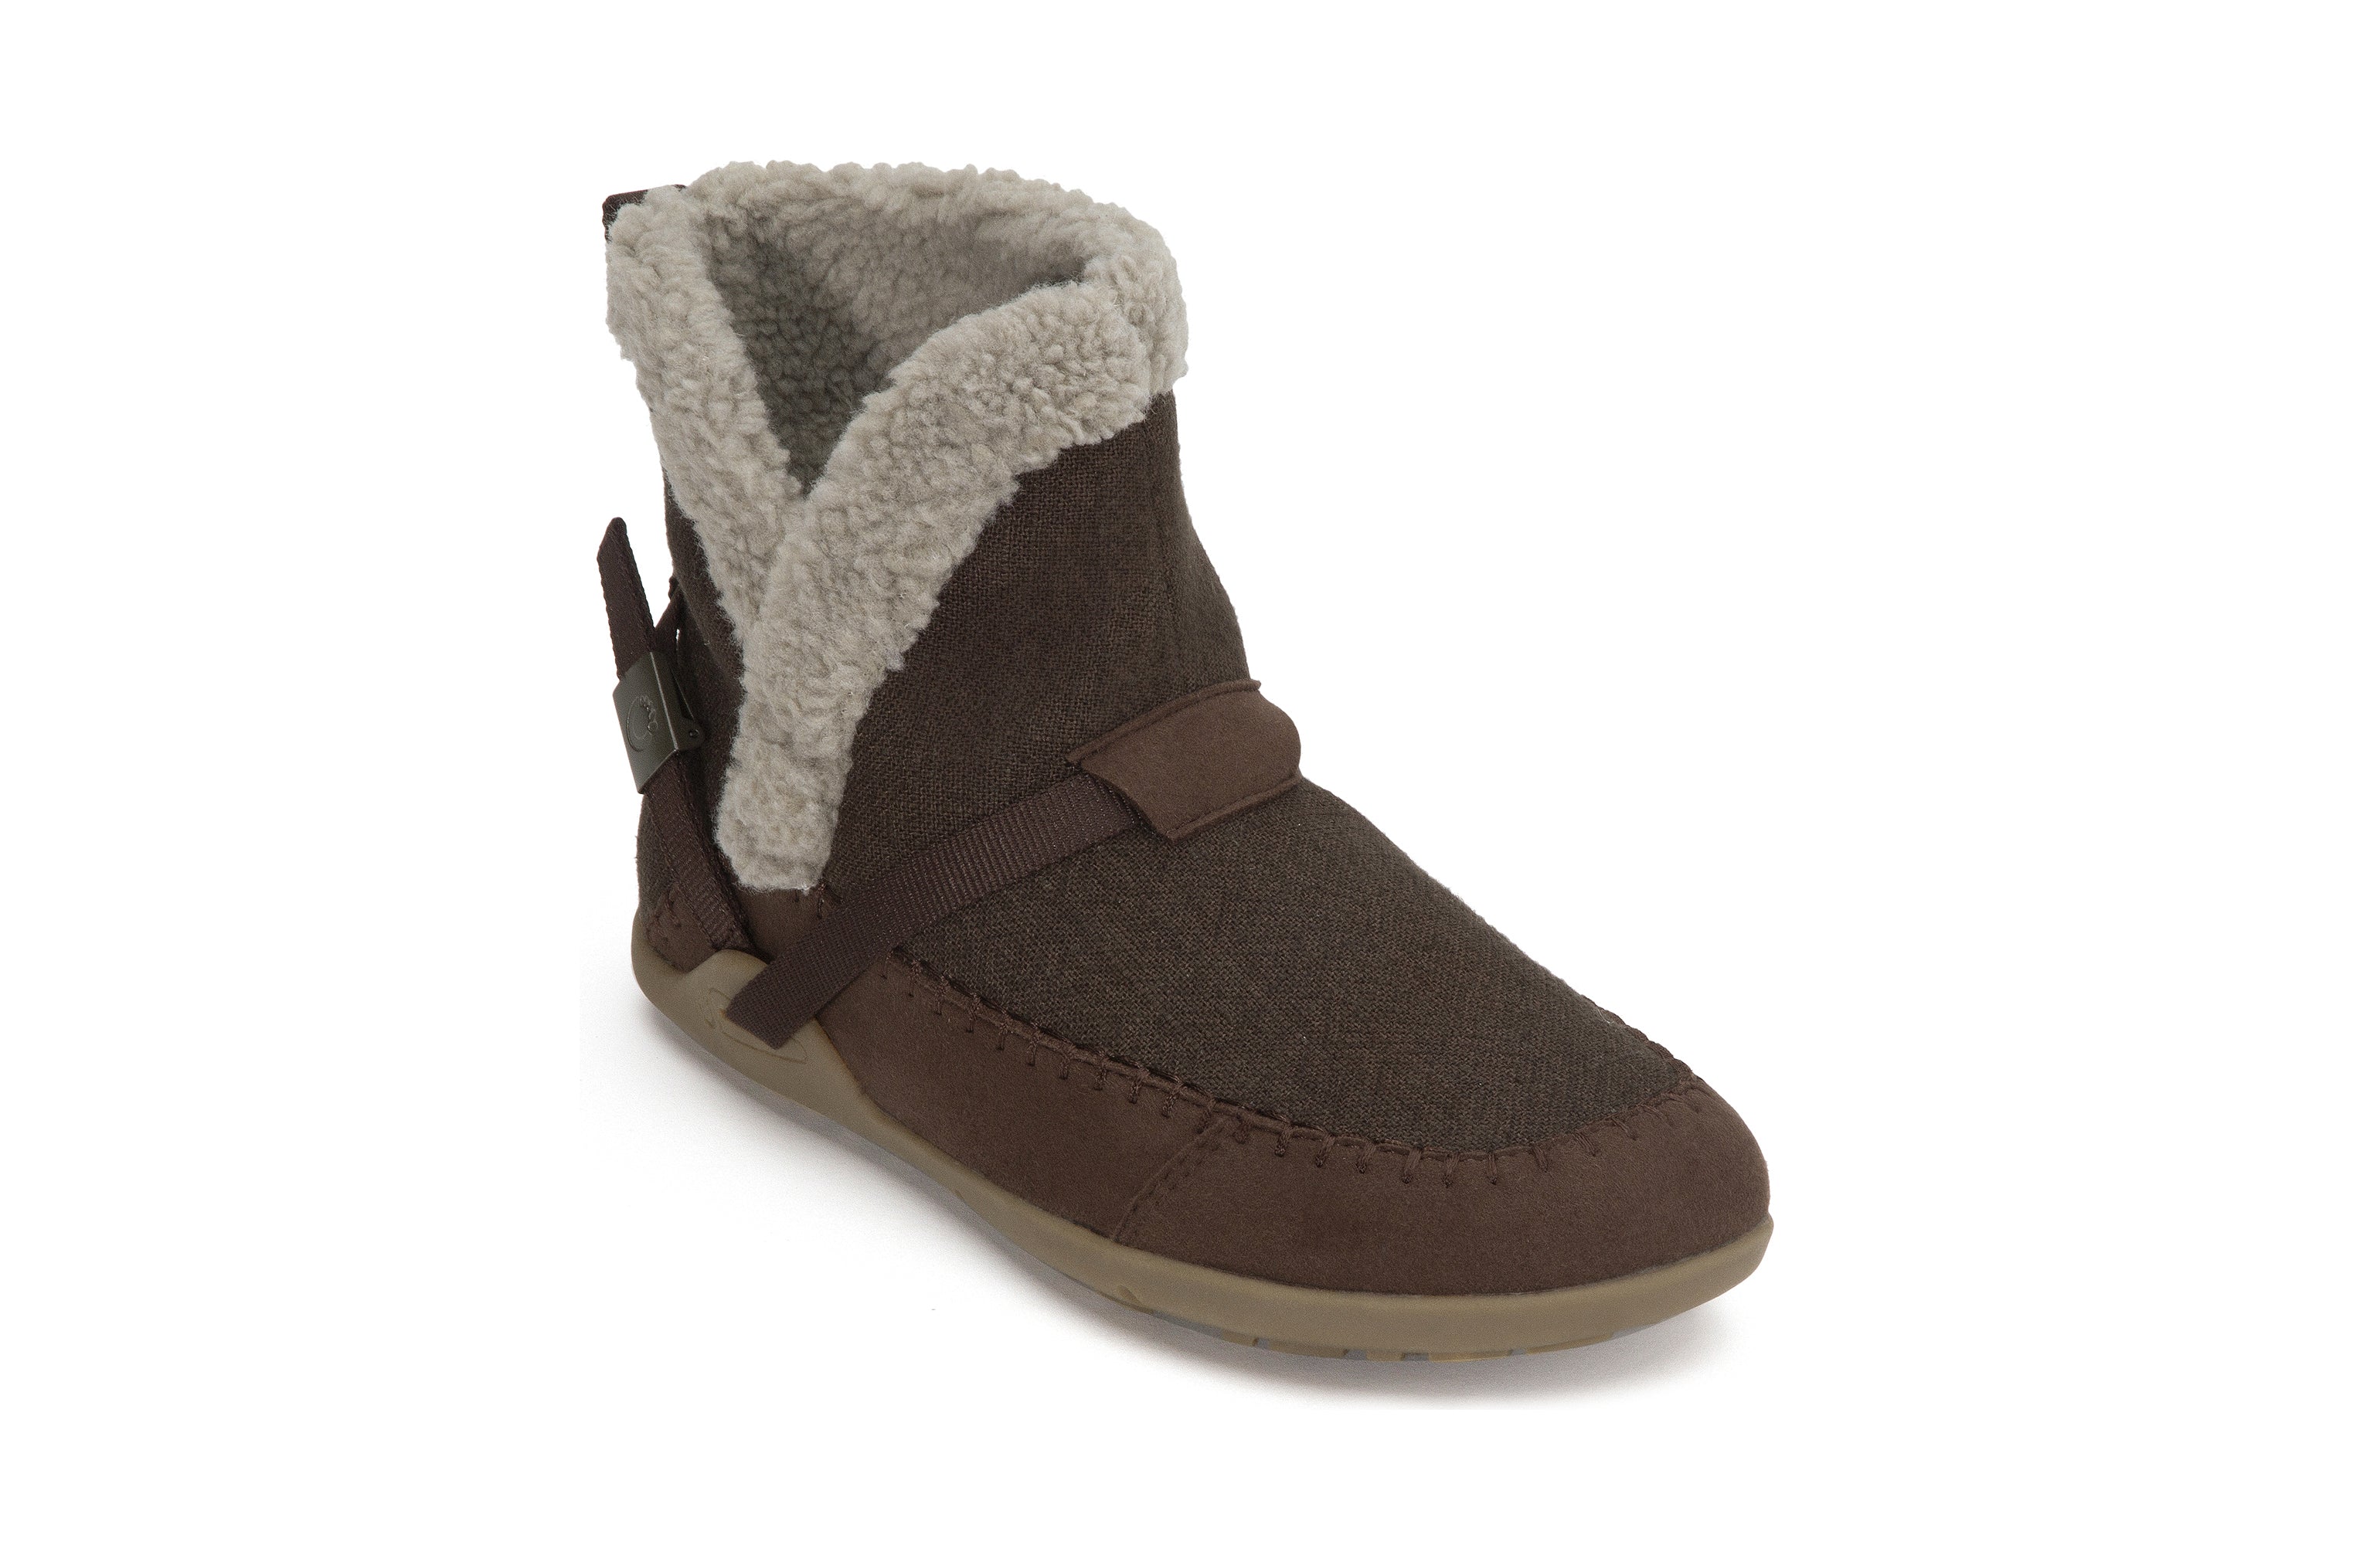 Xero Shoes Ashland barfods kanvas støvler til kvinder i farven java brown, vinklet